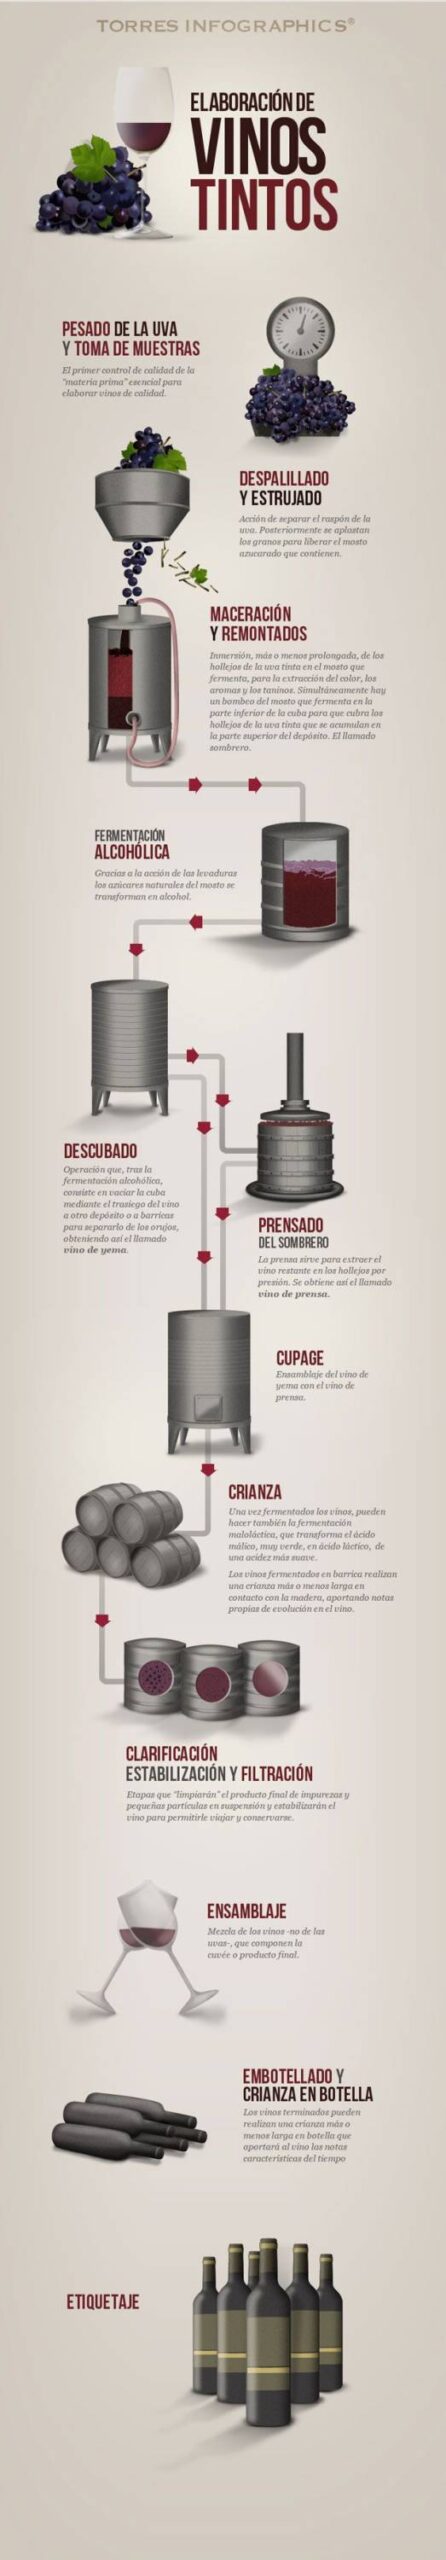 Fases en la elaboración de los vinos tintos #infografia